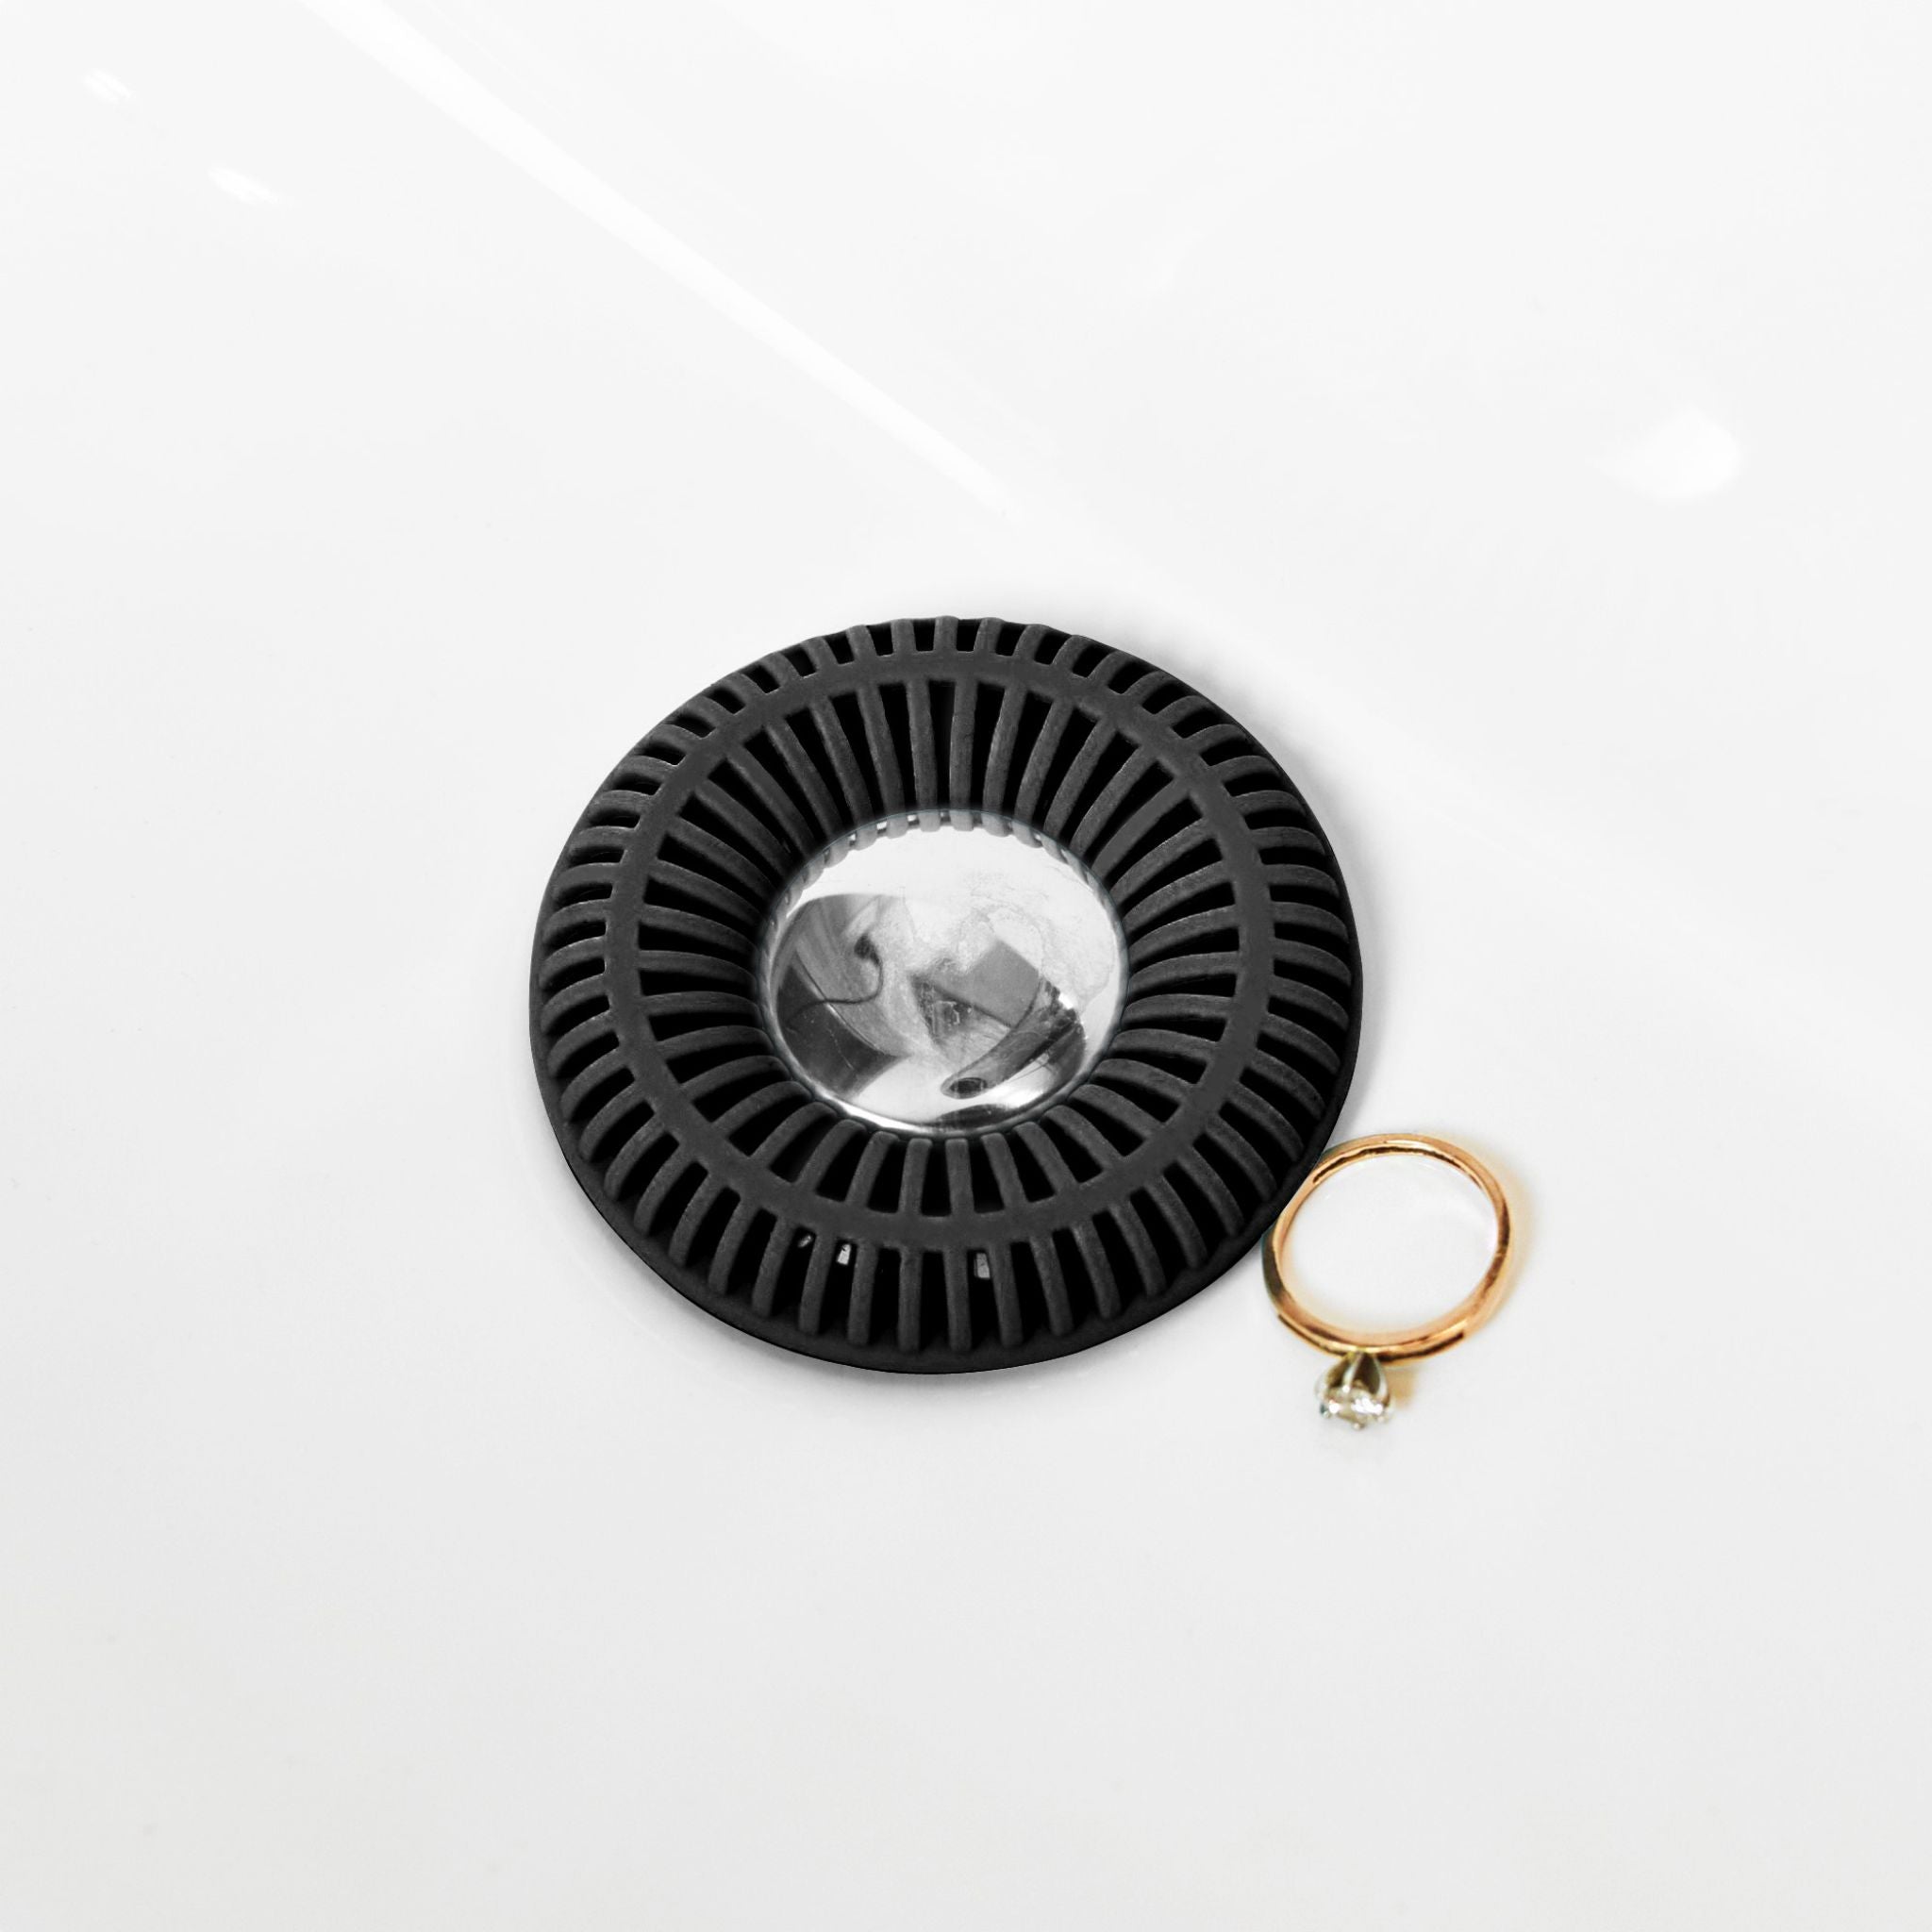 SinkRing, Next-Generation Bathroom Sink Strainer - Black